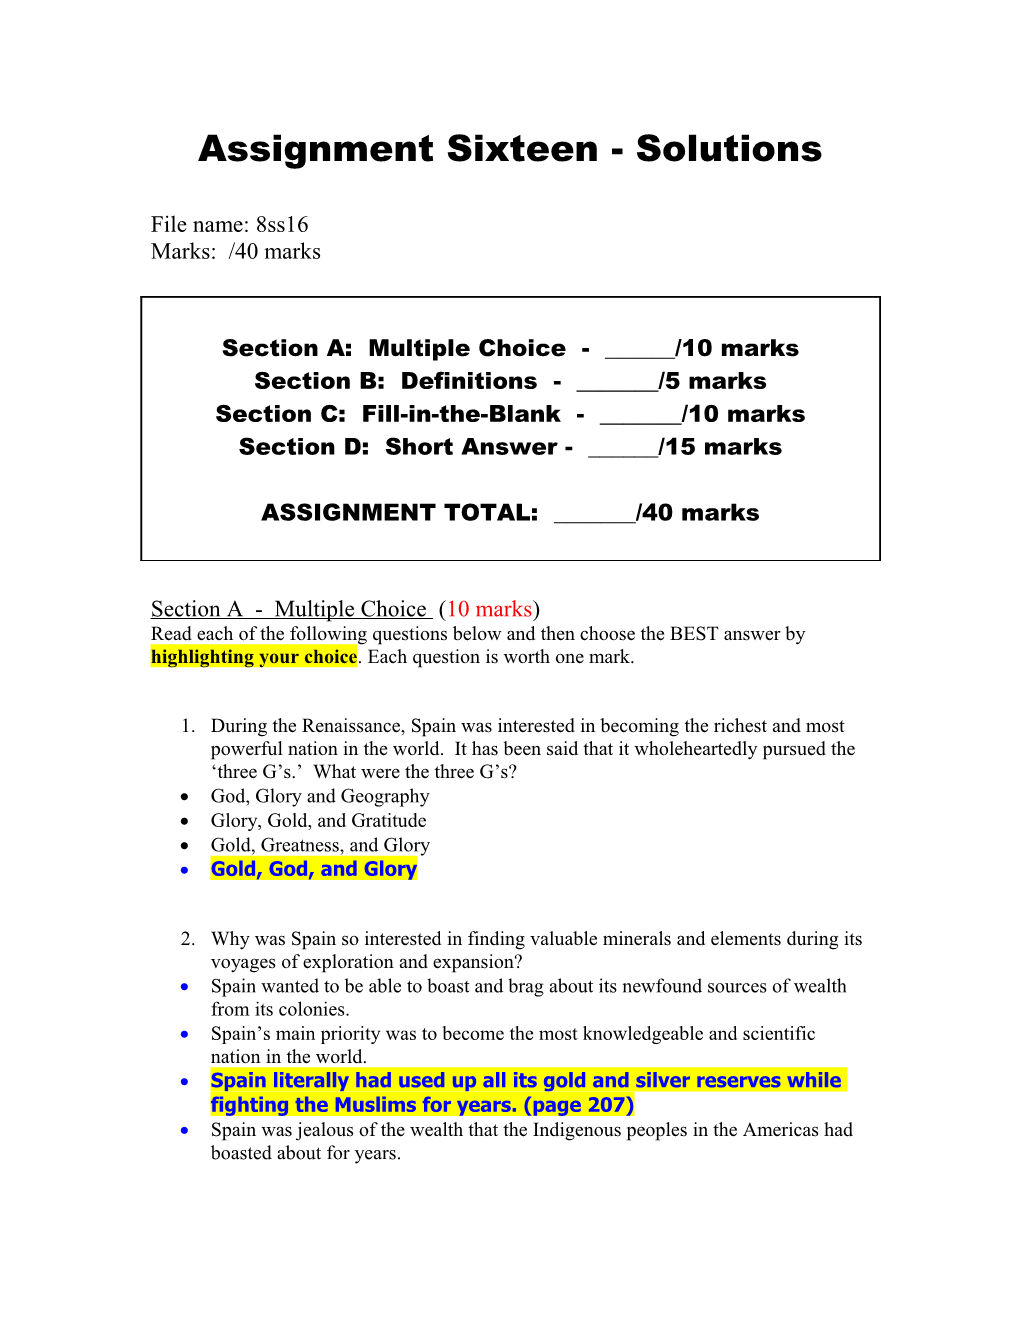 Assignment Sixteen - Solutions